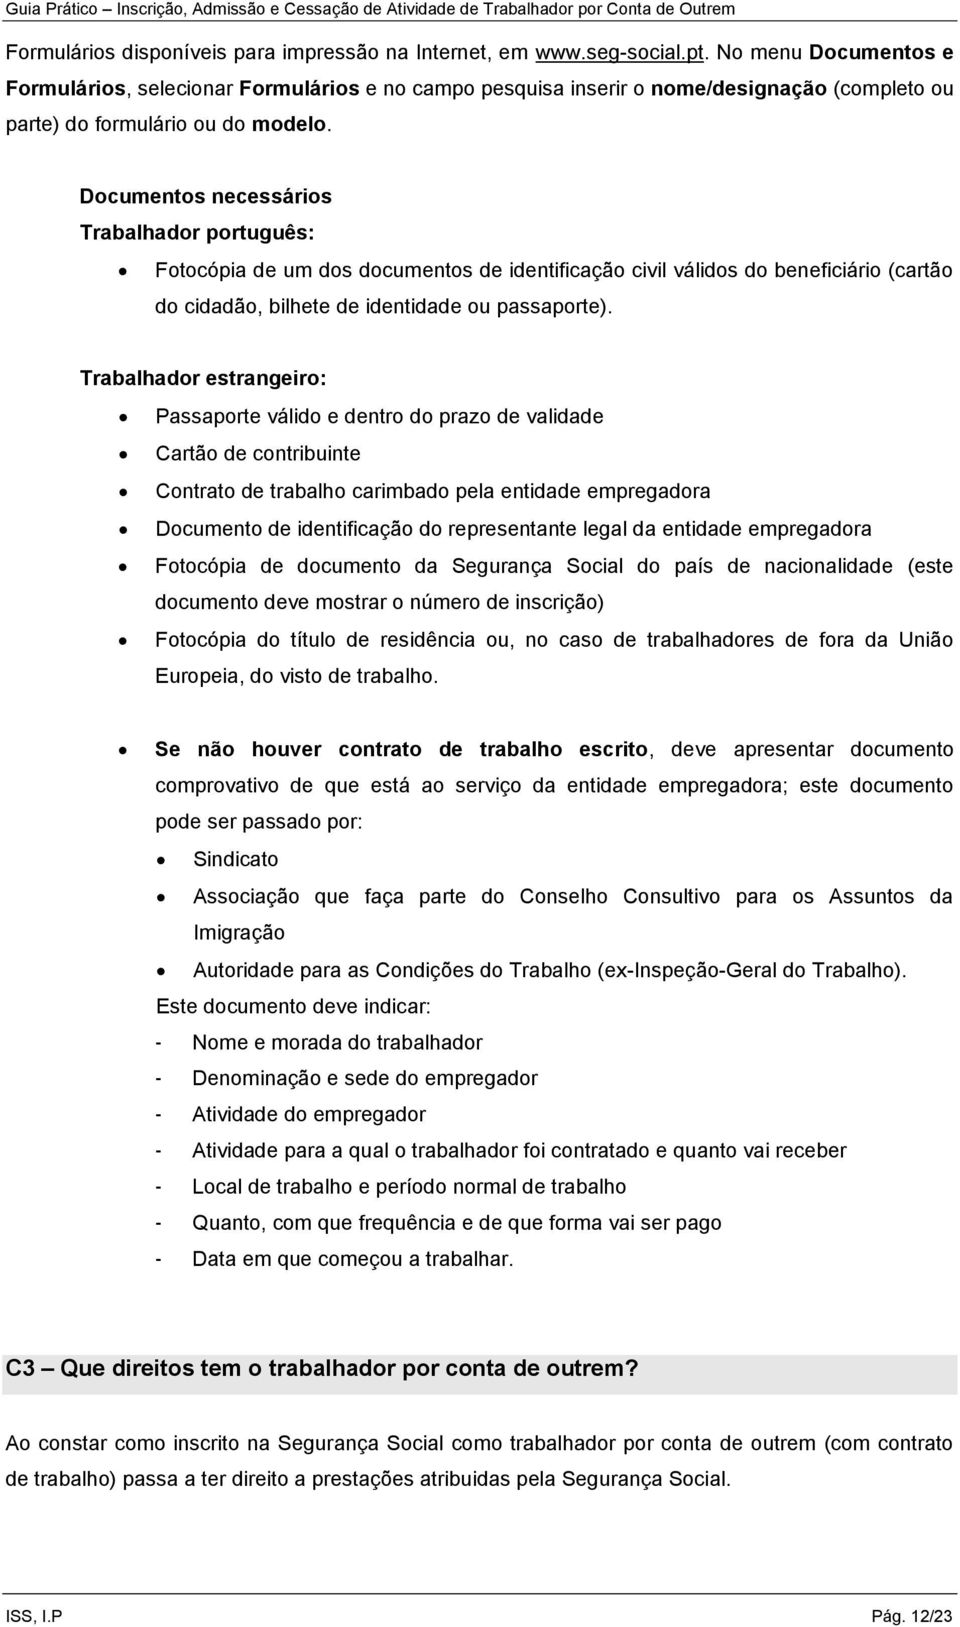 Documentos necessários Trabalhador português: Fotocópia de um dos documentos de identificação civil válidos do beneficiário (cartão do cidadão, bilhete de identidade ou passaporte).